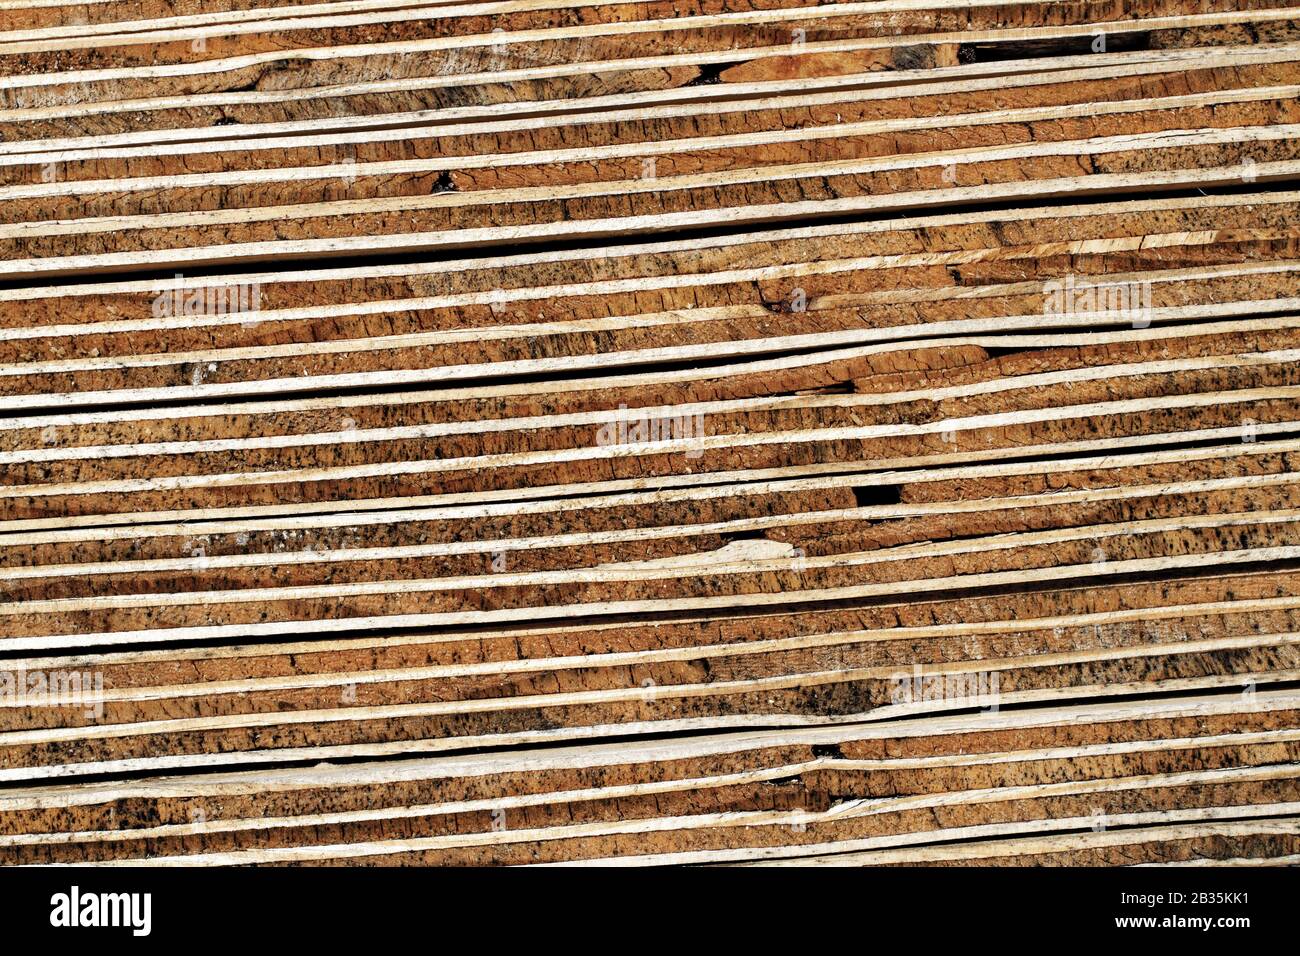 Strato di legno compensato: Sfondo di legno dettagliato che mostra una vista dettagliata della sezione trasversale della pila di legno compensato a sette strati Foto Stock